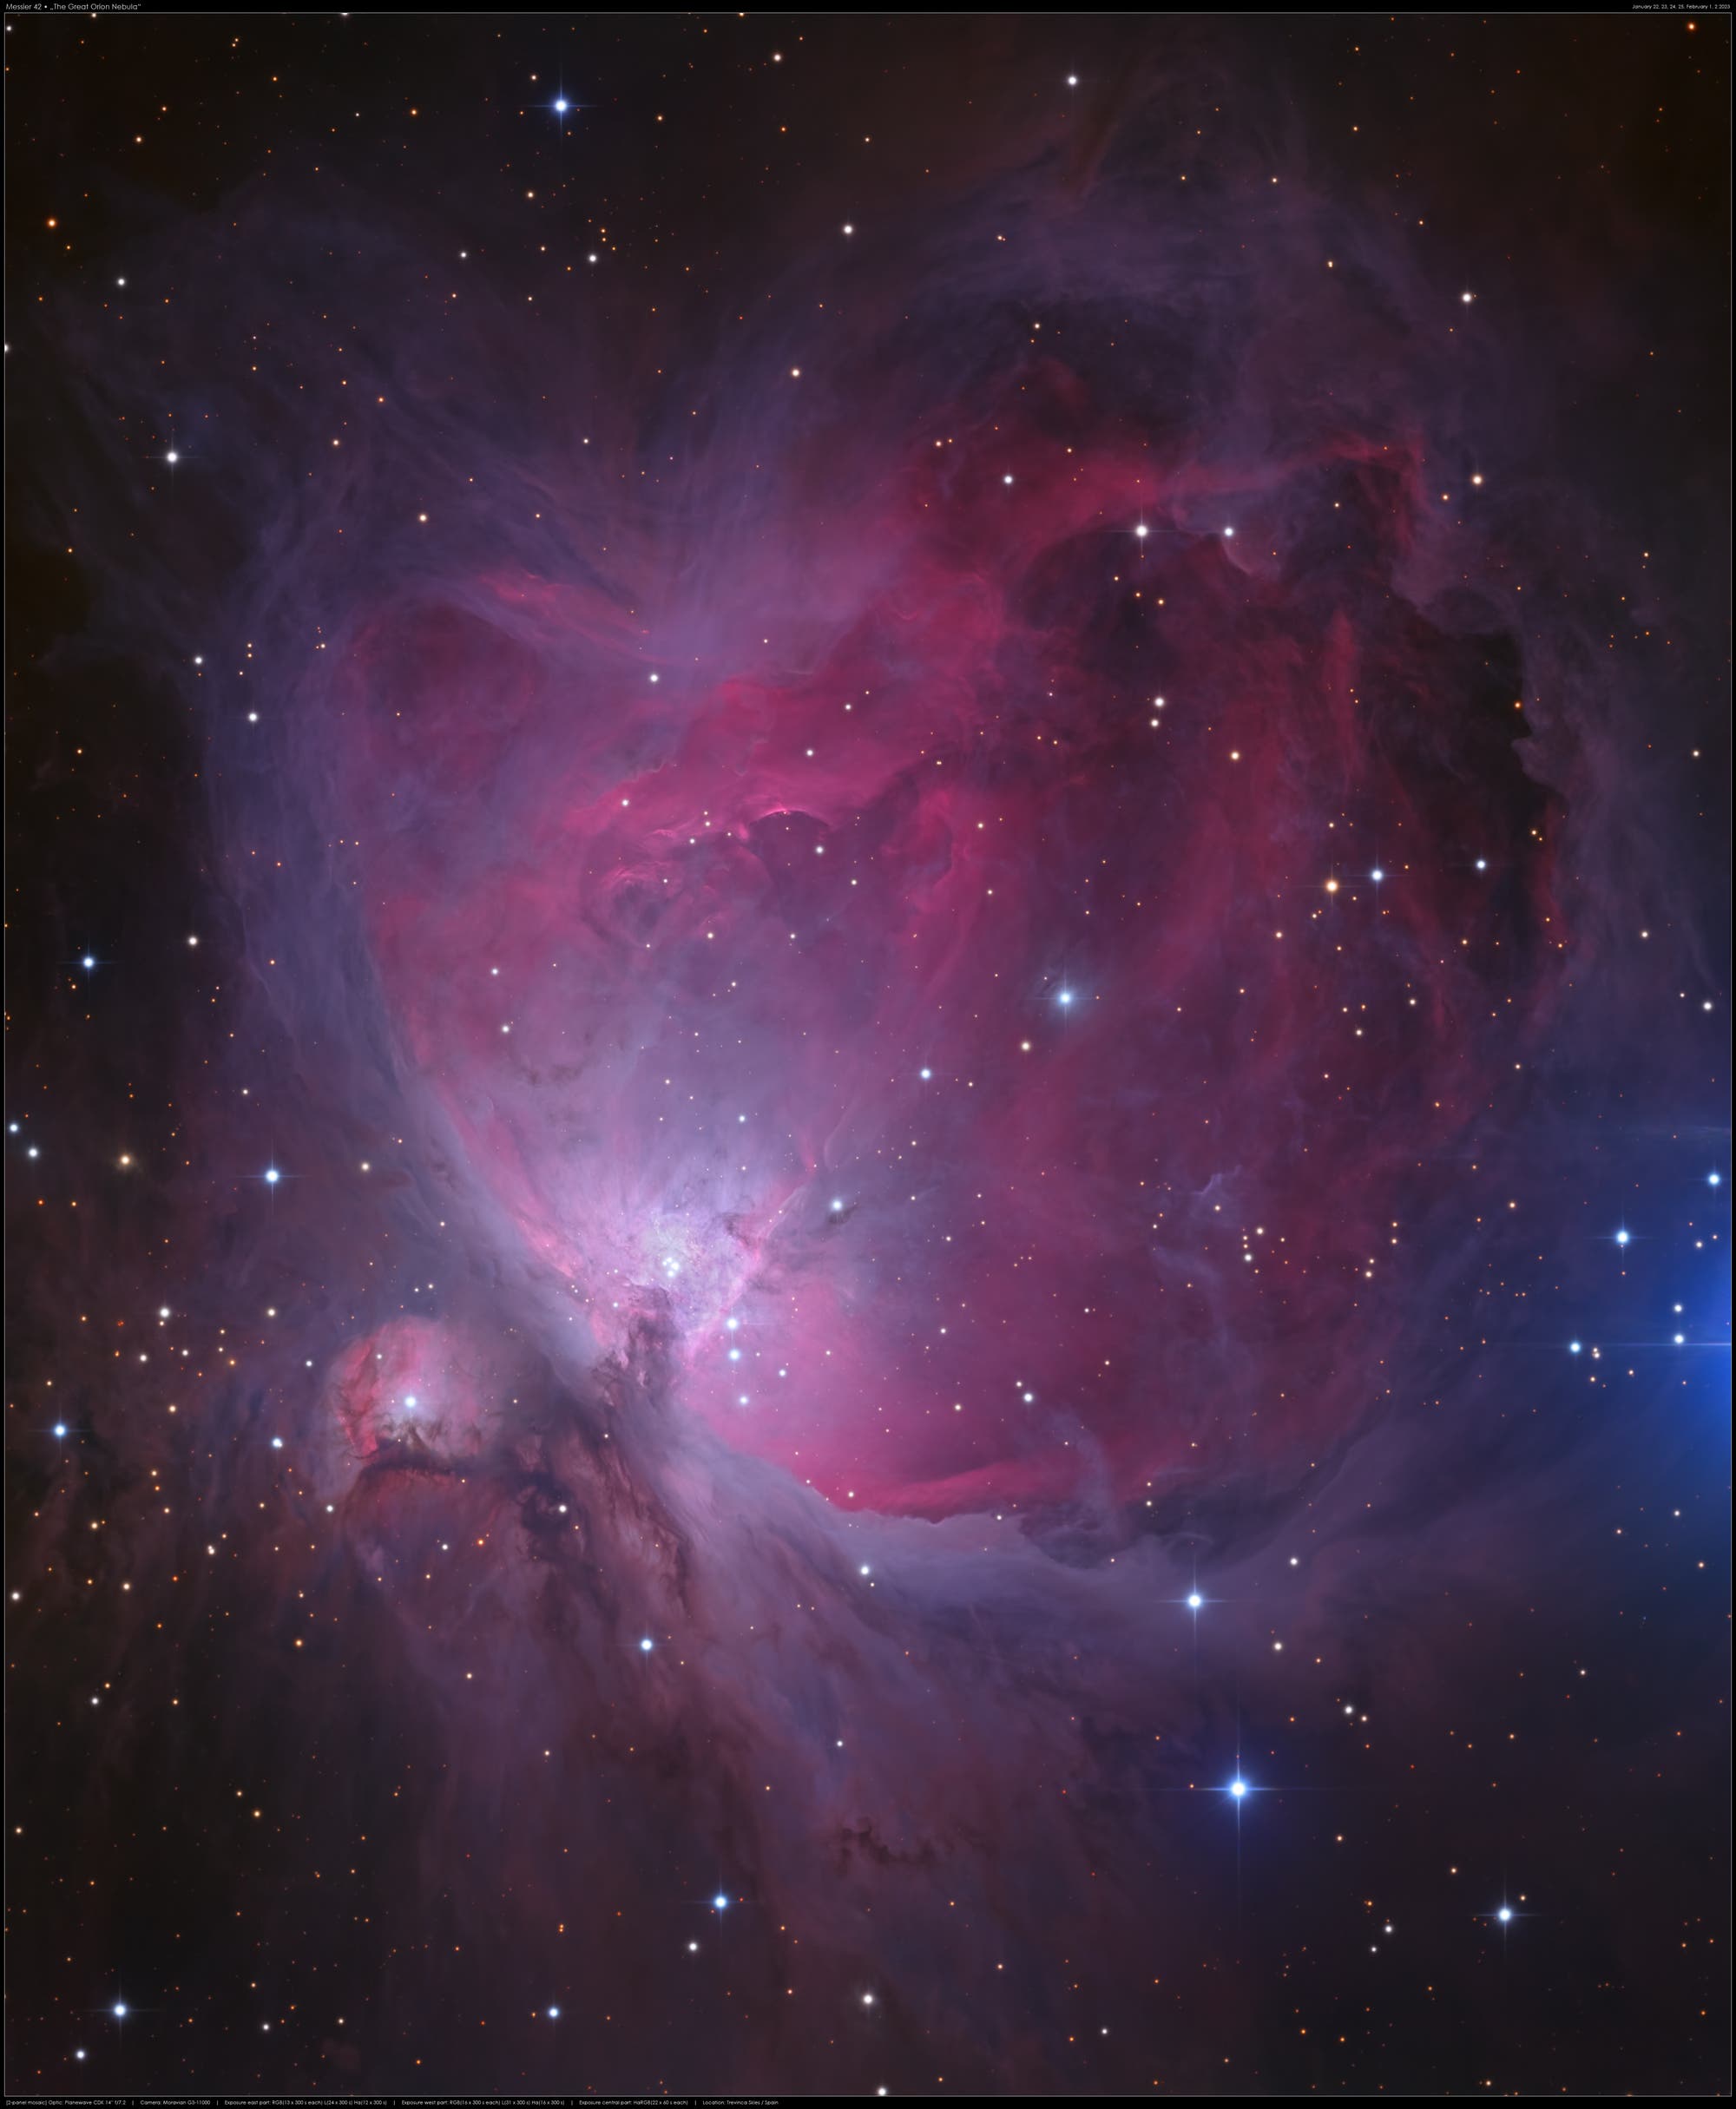 Der Große Orionnebel